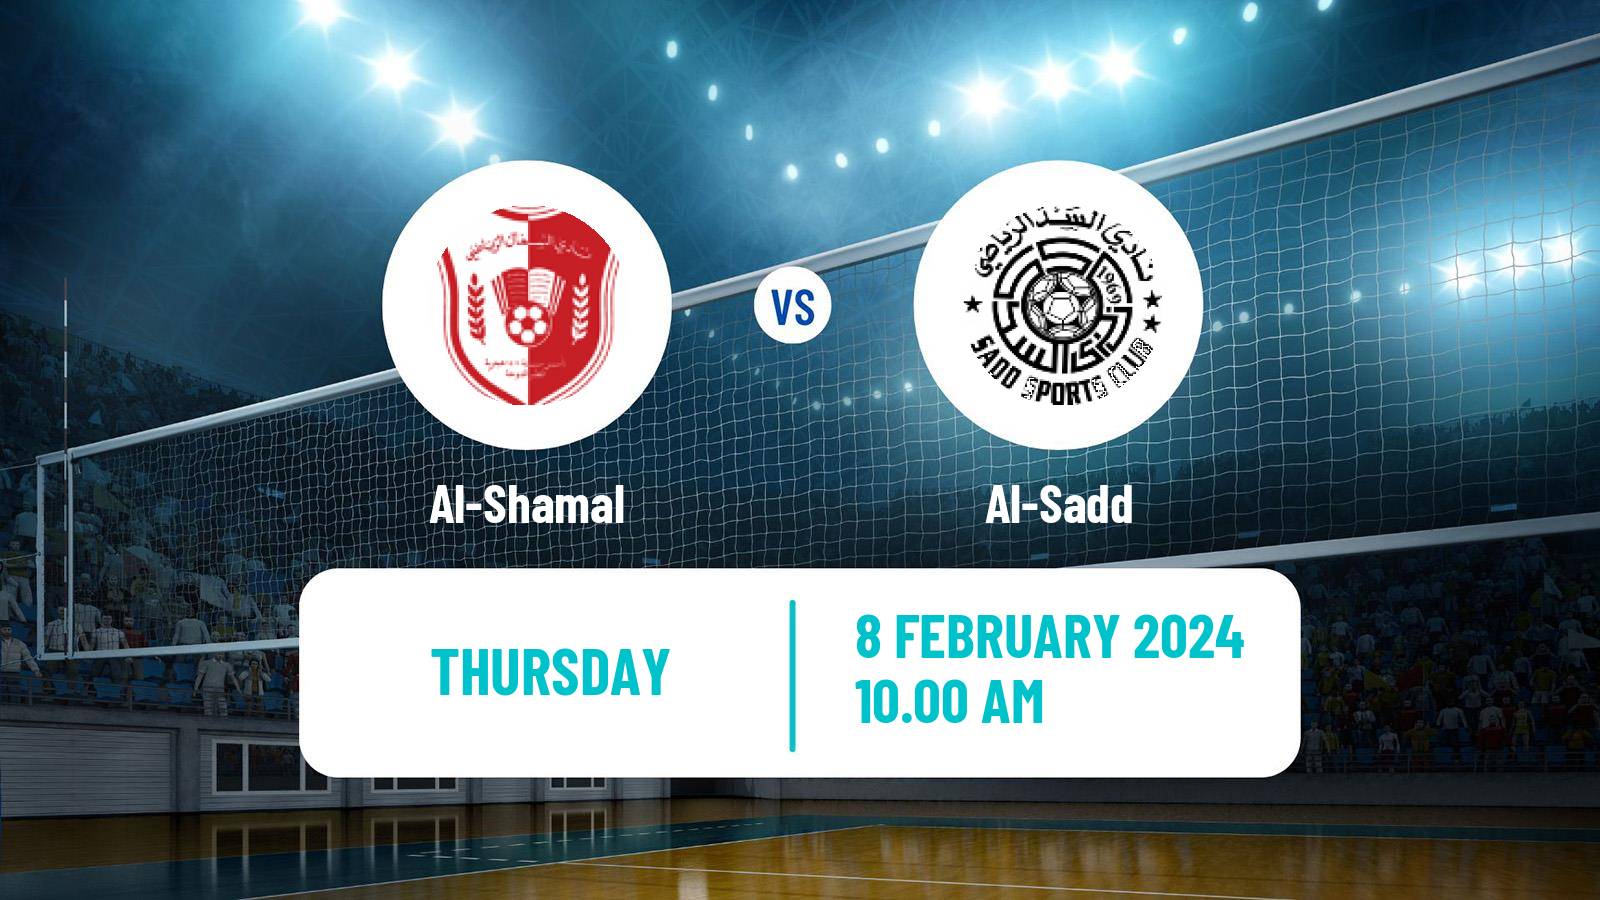 Volleyball Qatar Volleyball League Al-Shamal - Al-Sadd